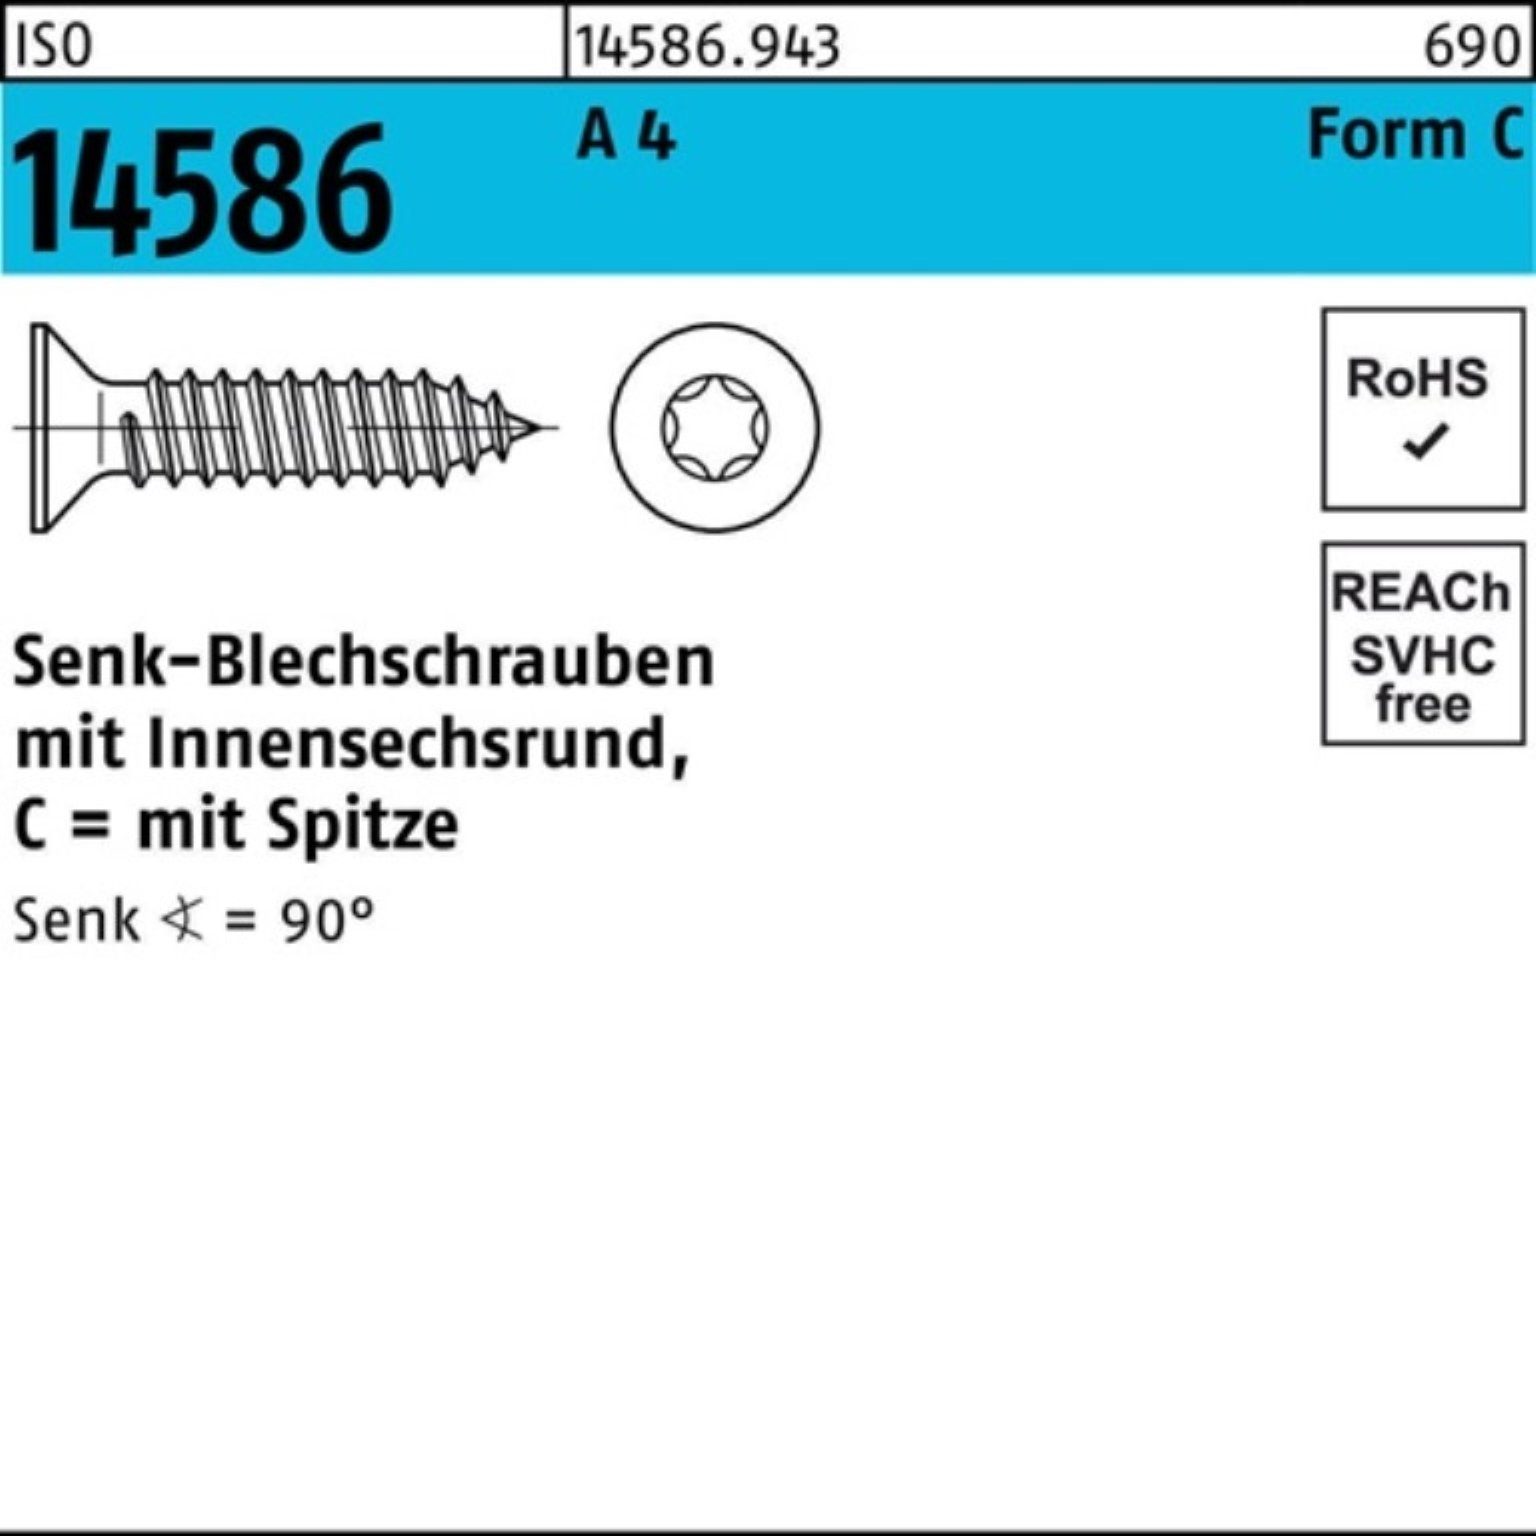 Schraube Reyher Pack Senkblechschraube 19-T10 2,9x 1000er ISR/Spitze 100 14586 A 4 ISO